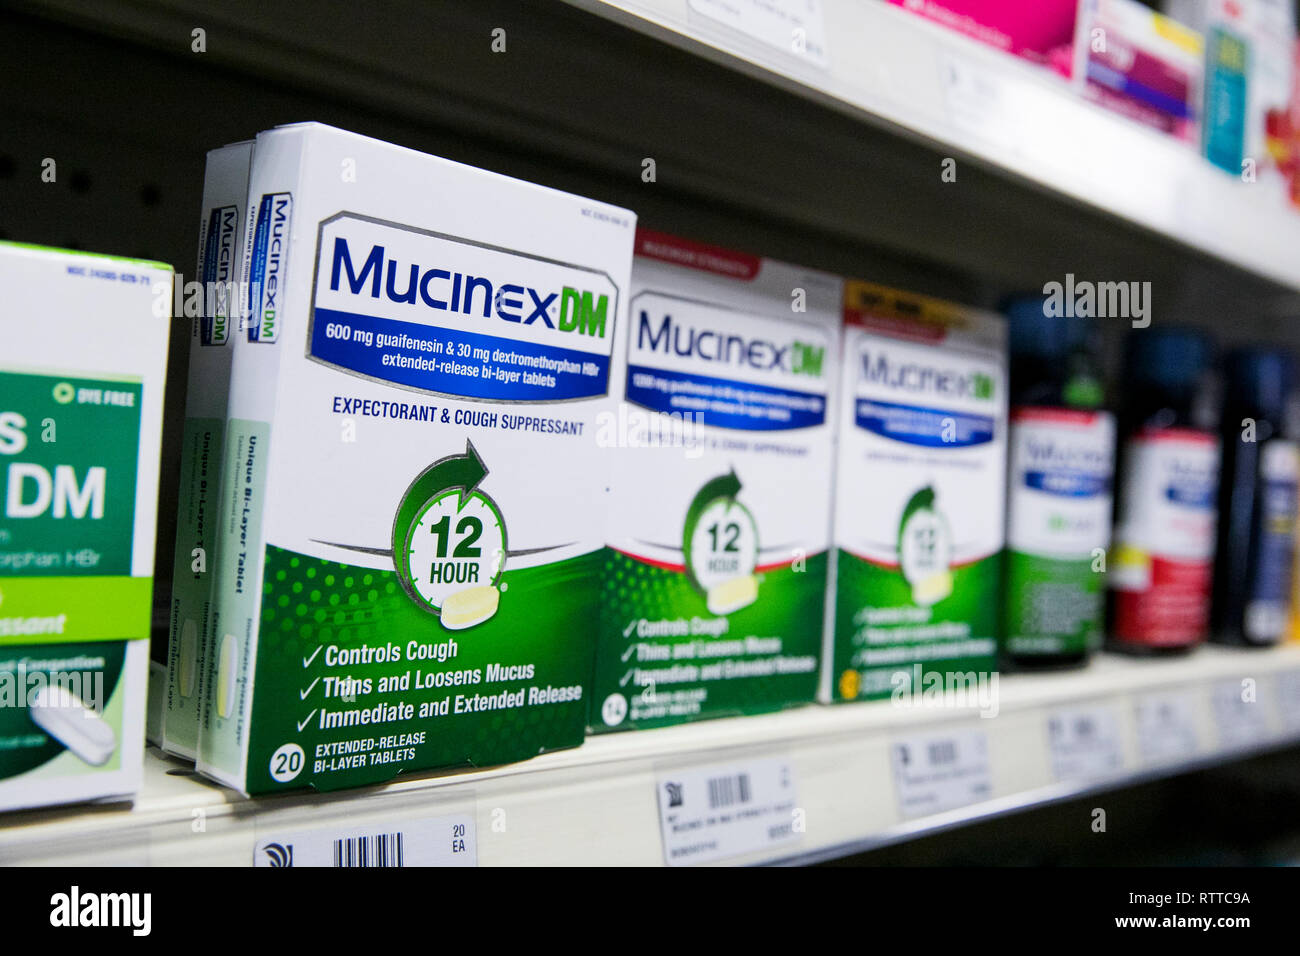 Mucinex DM over-the-counter medicina fredda fotografato in una farmacia. Foto Stock